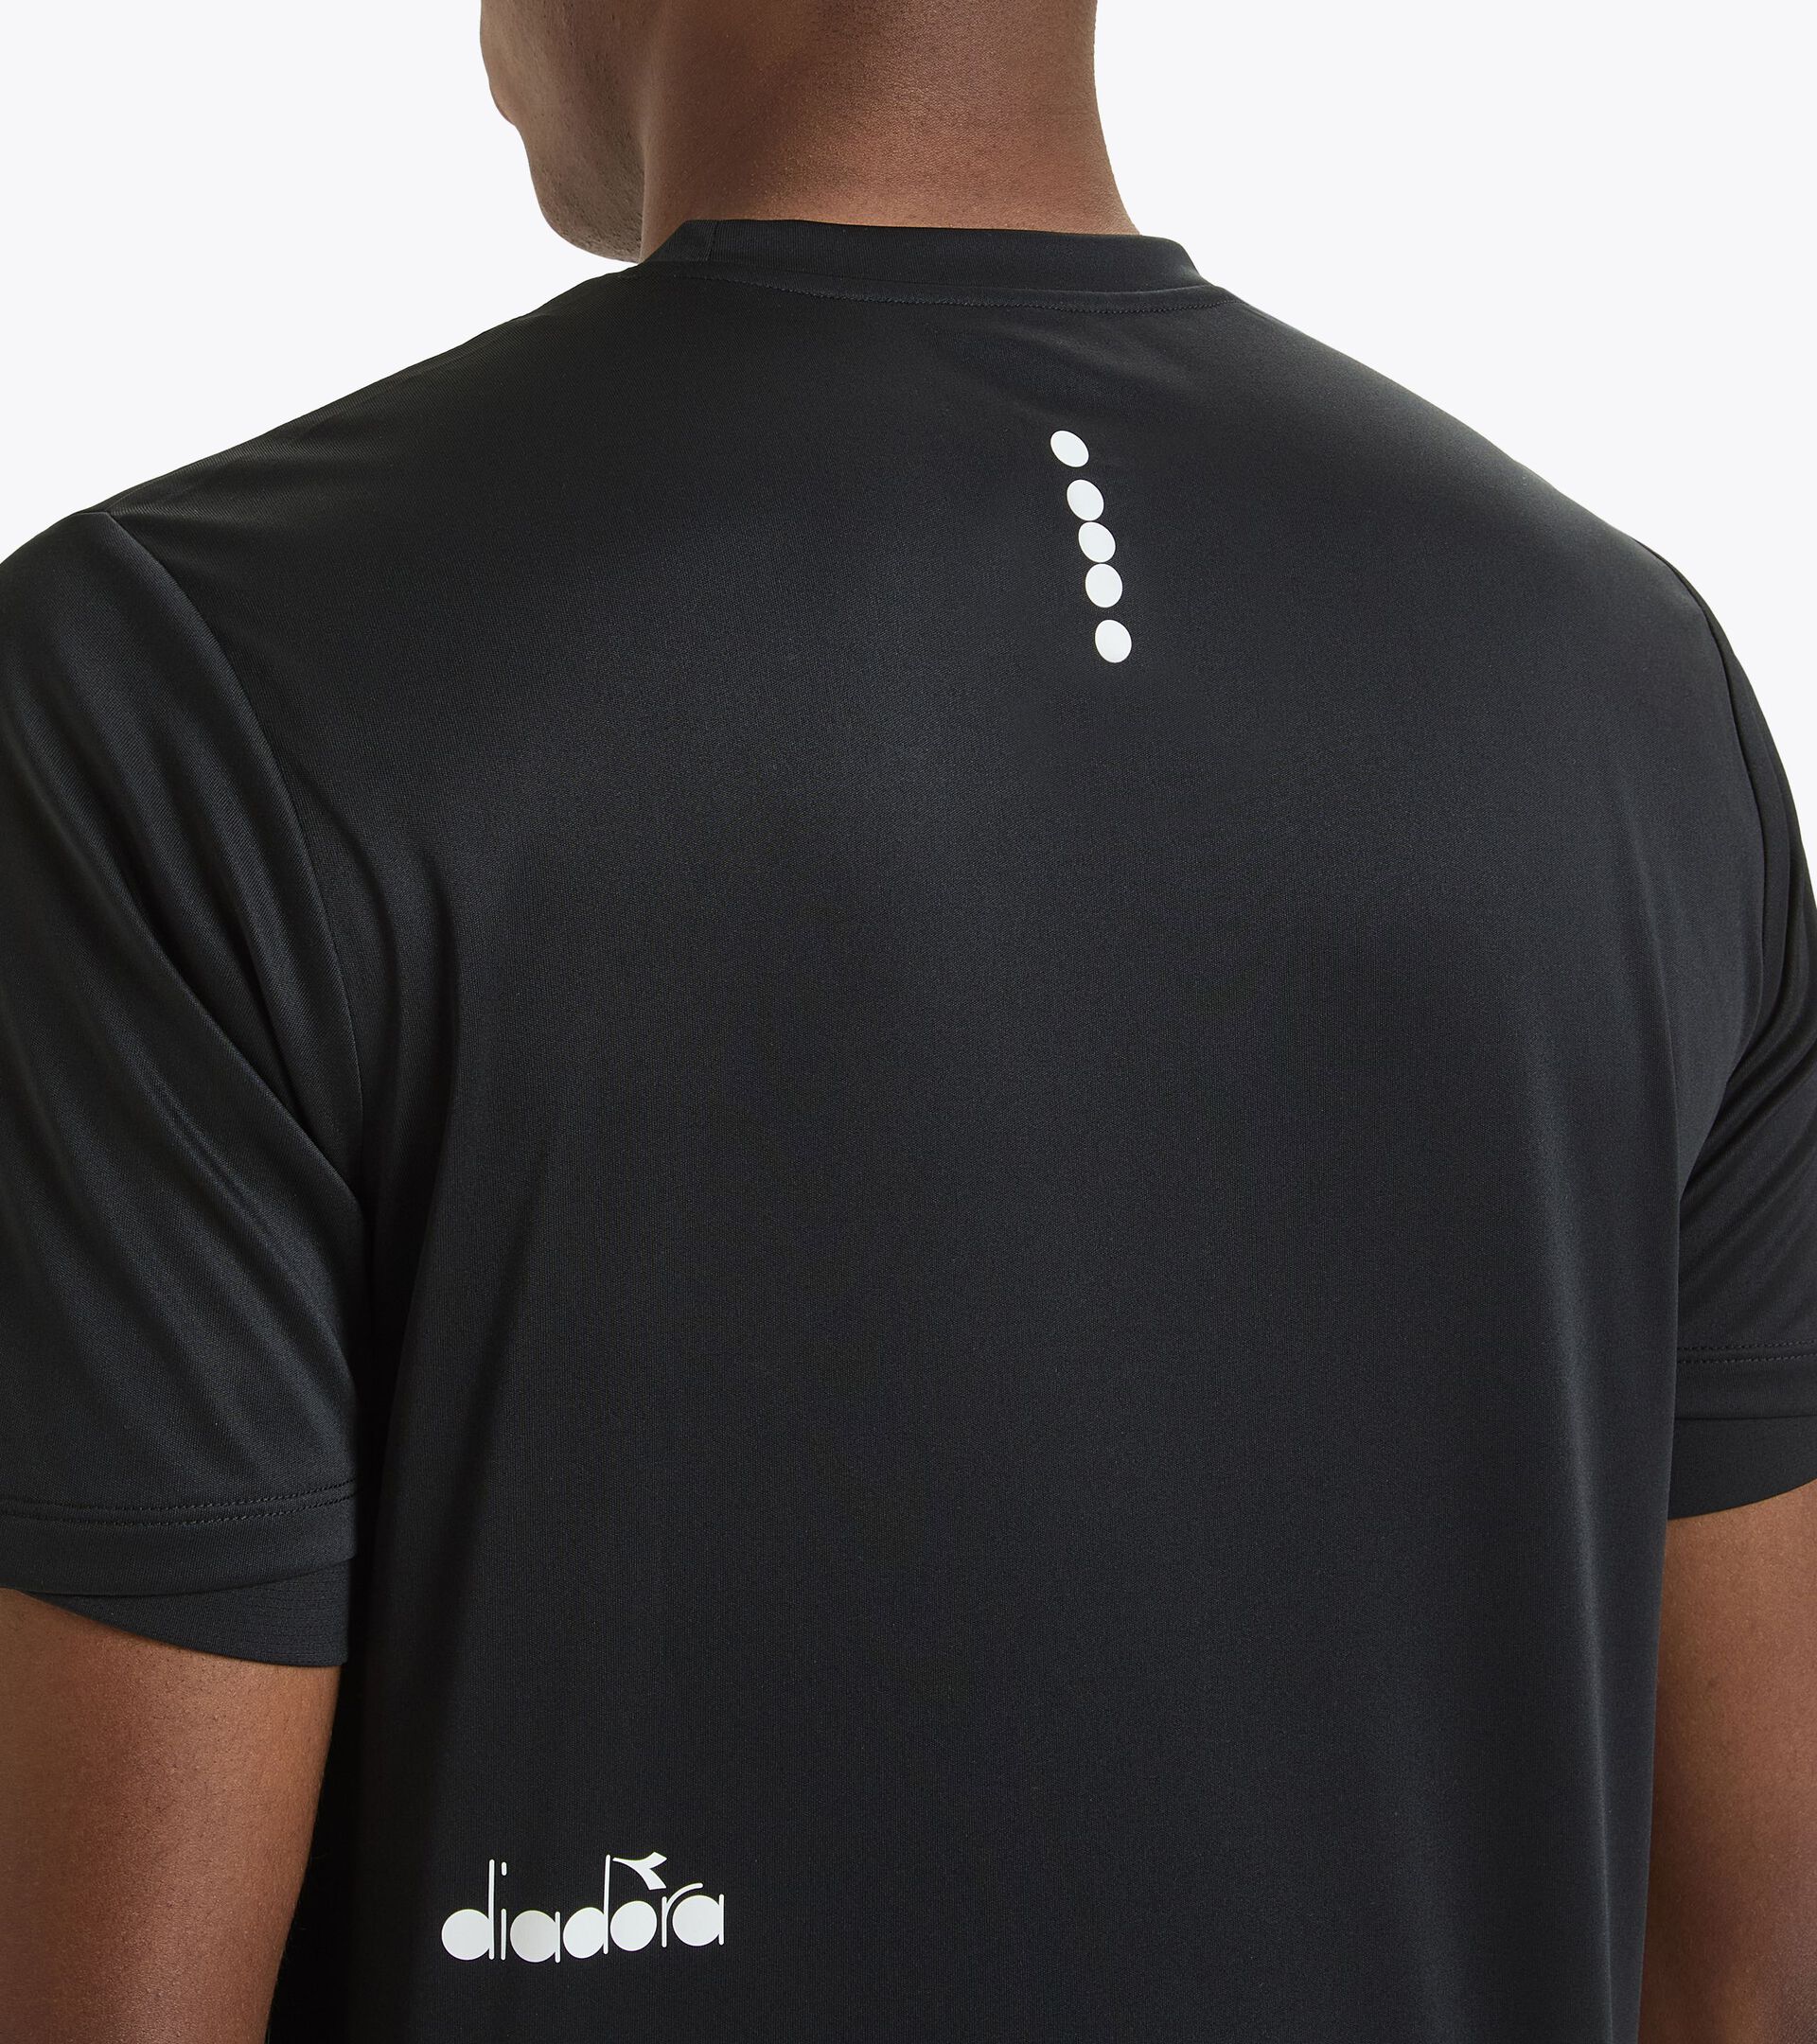 Calcio training t-shirt - Unisex TRAINING SHIRT SCUDETTO BLACK - Diadora